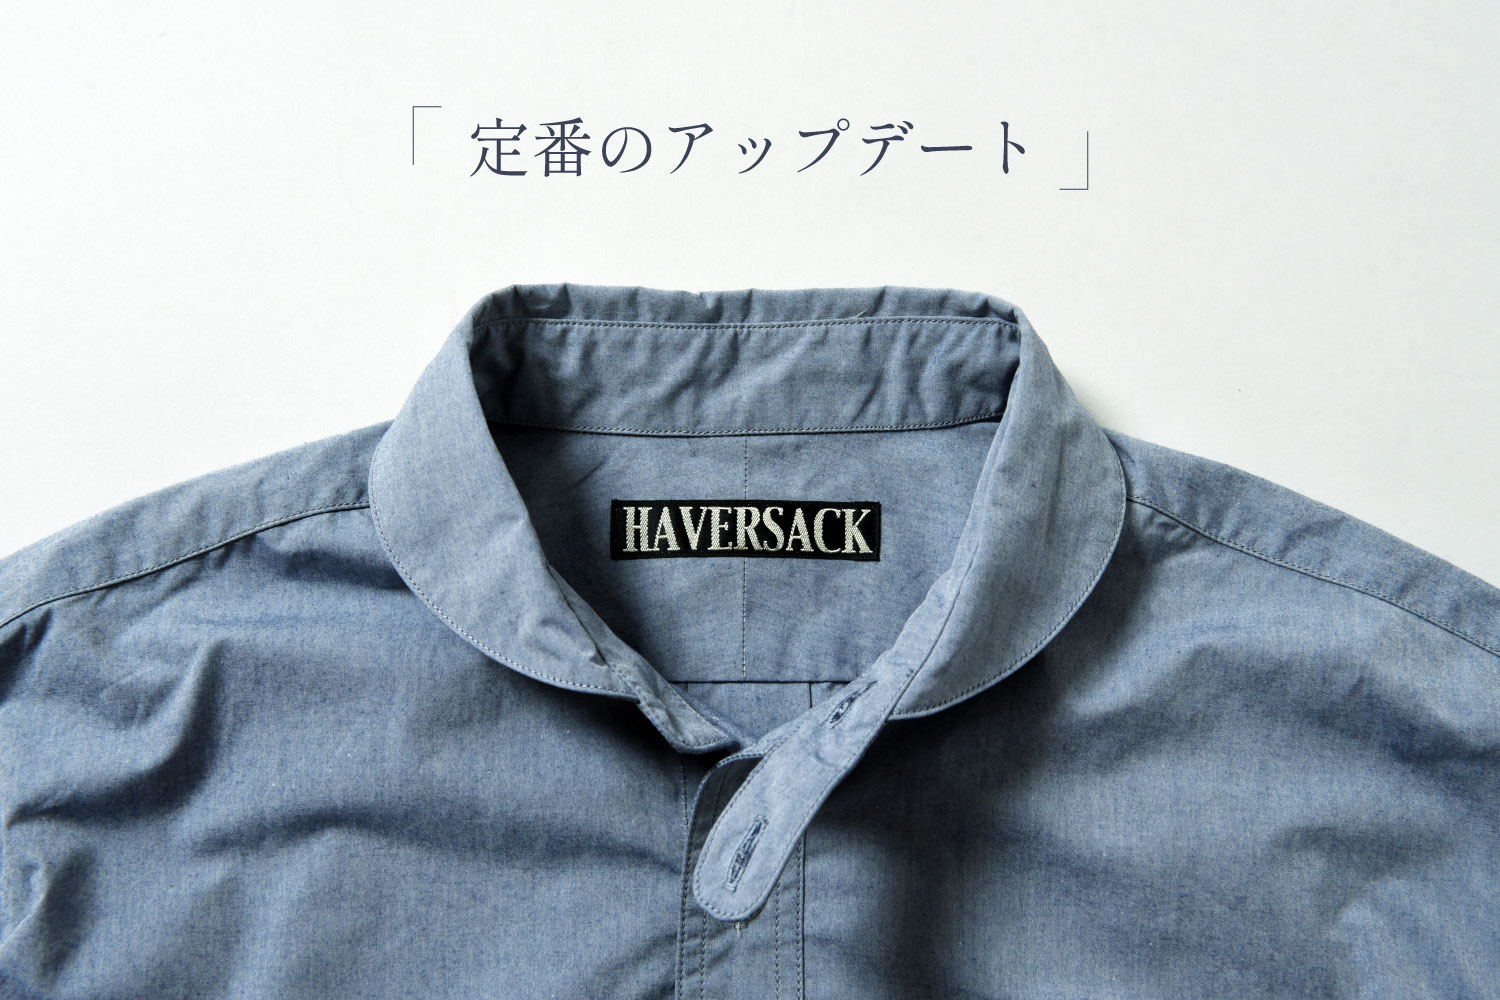 HAVERSACK - EXCLUSIVE MODEL